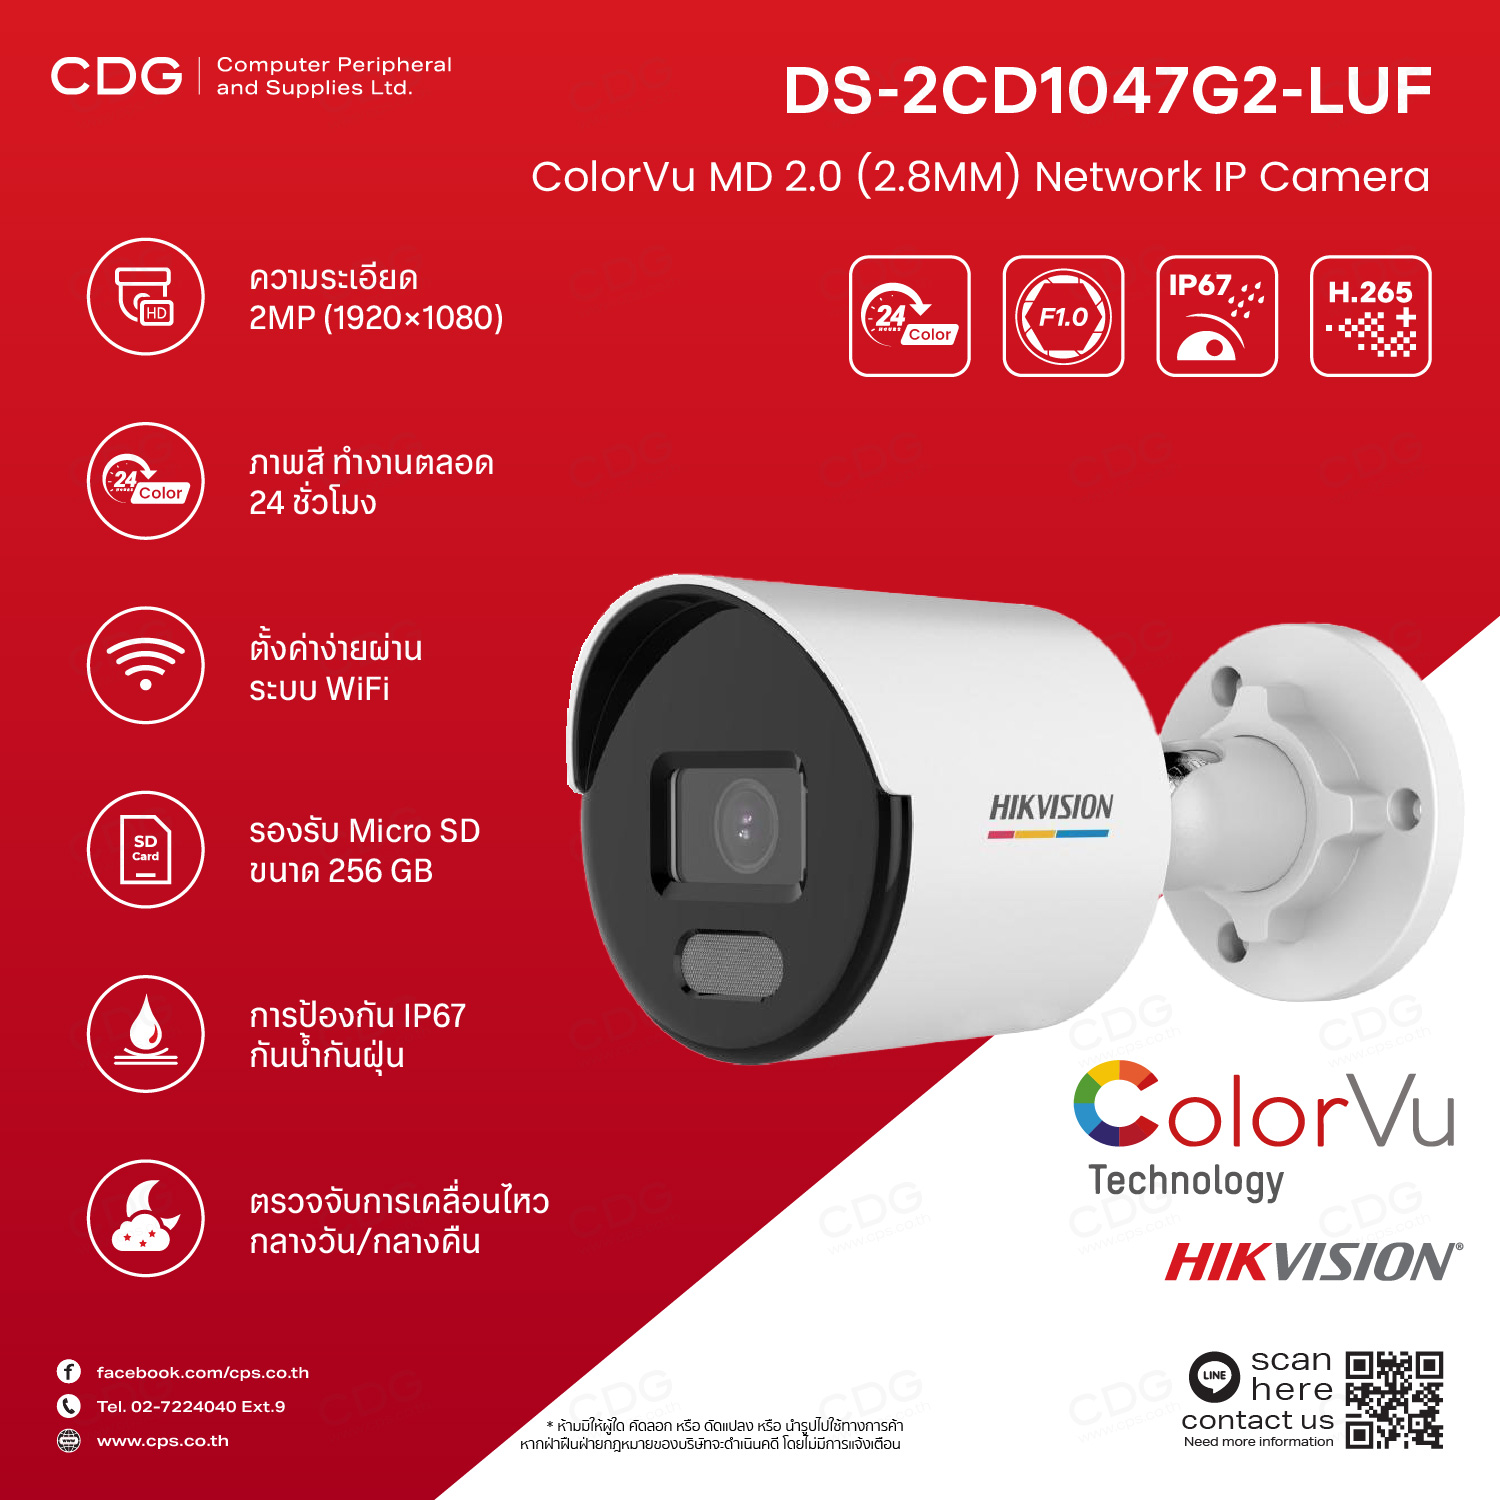 HIKVISION DS-2CD1047G2-LUF (2.8MM) ColorVu 4 MP